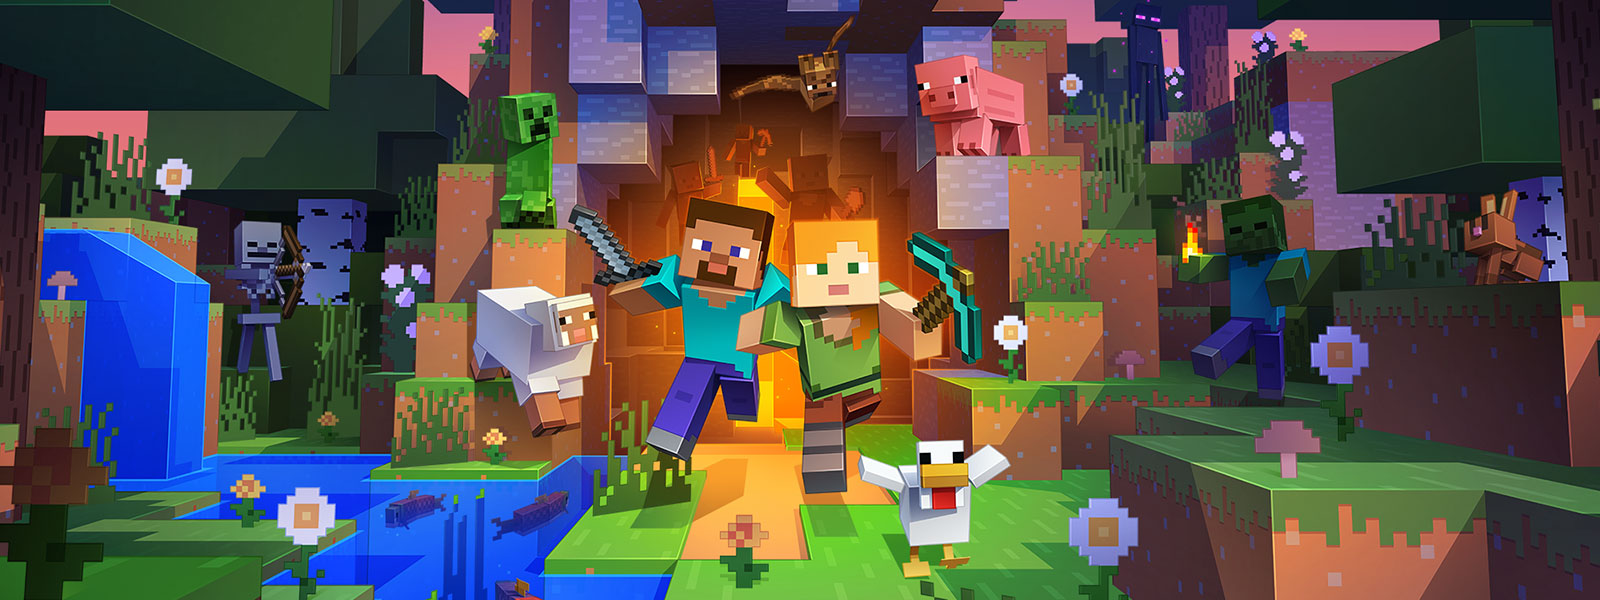 Два персонажа выходят из туннеля с большим количеством героев из мира Minecraft